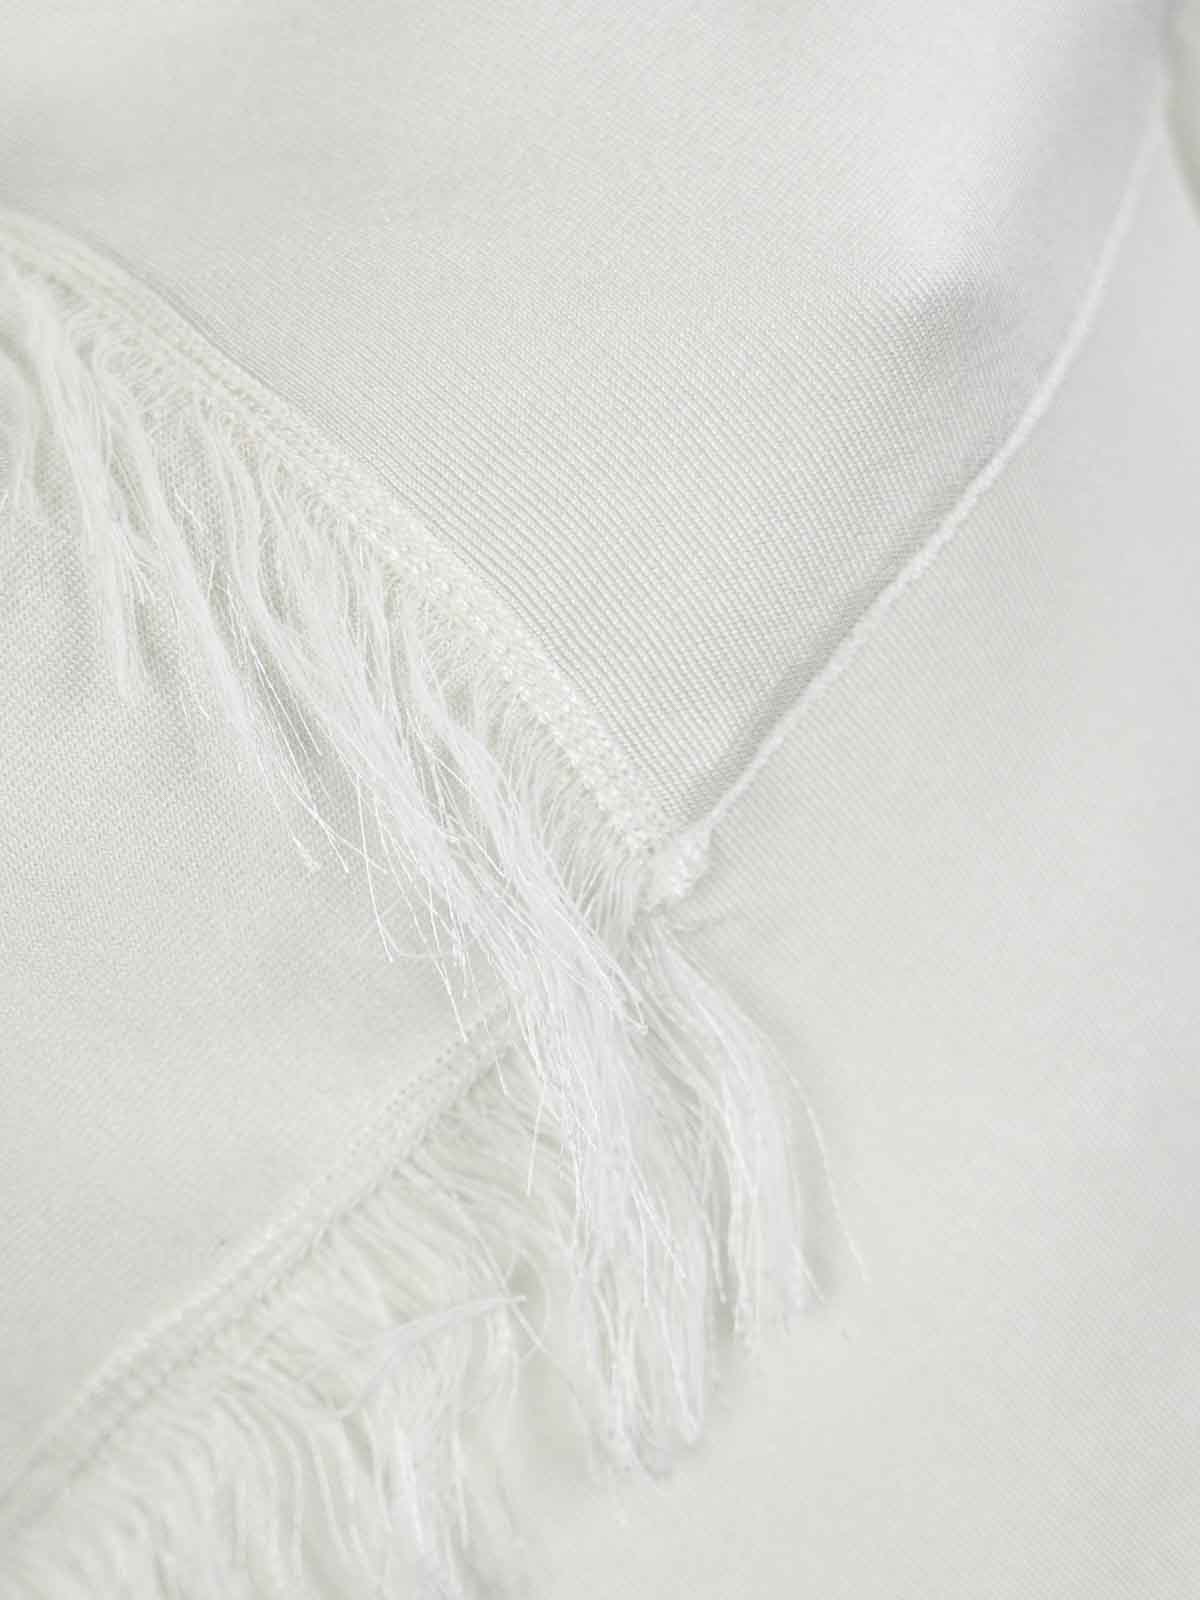 Shop Liviana Conti Camiseta - Blanco In White